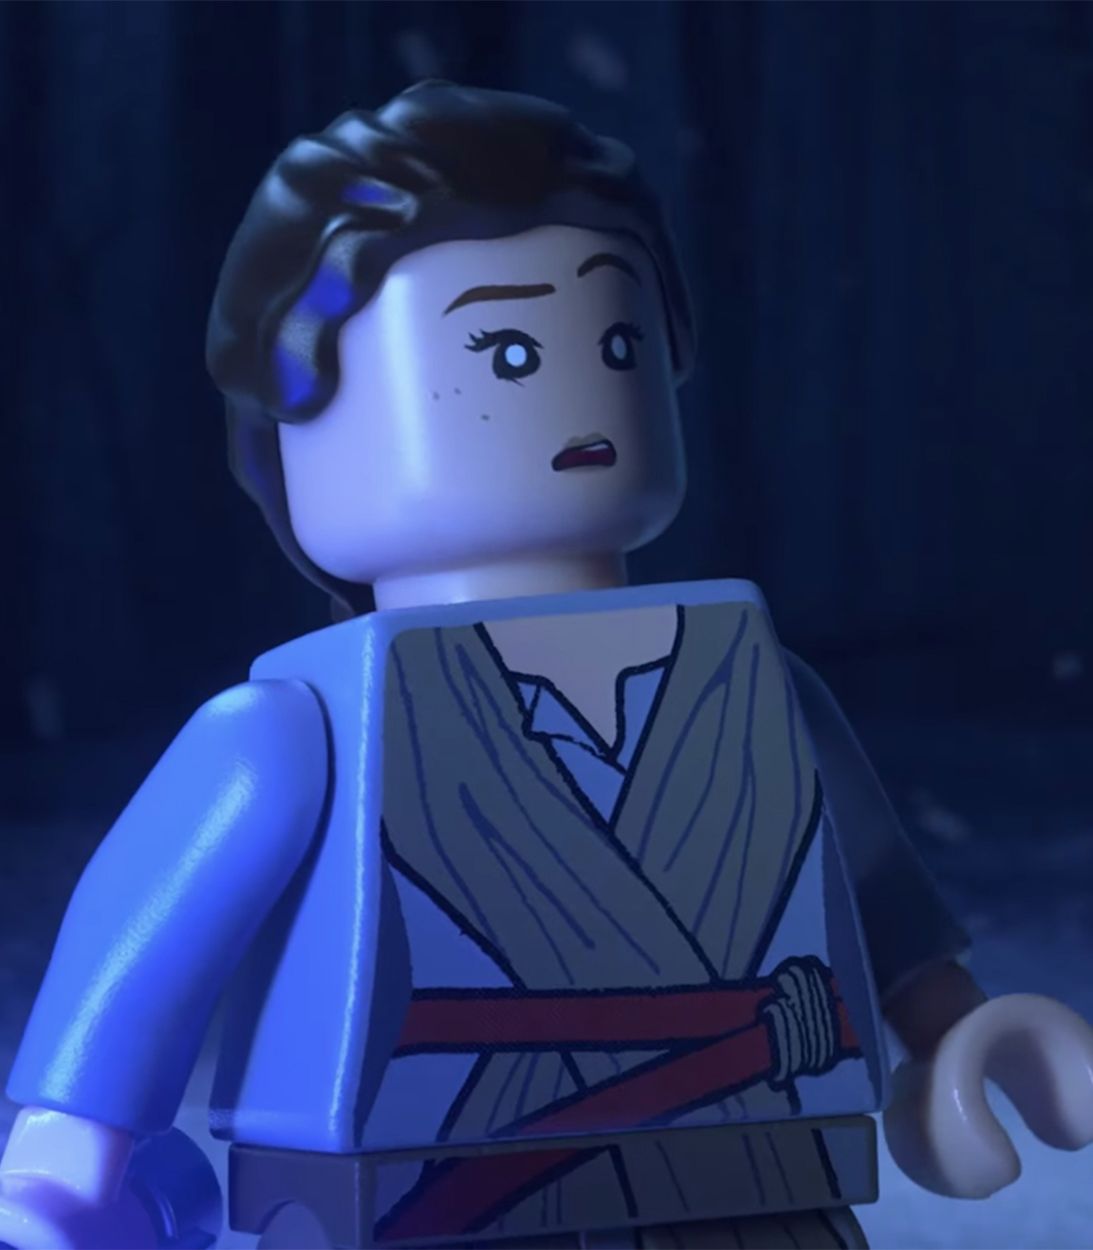 LEGO Star Wars Rey - Vertical